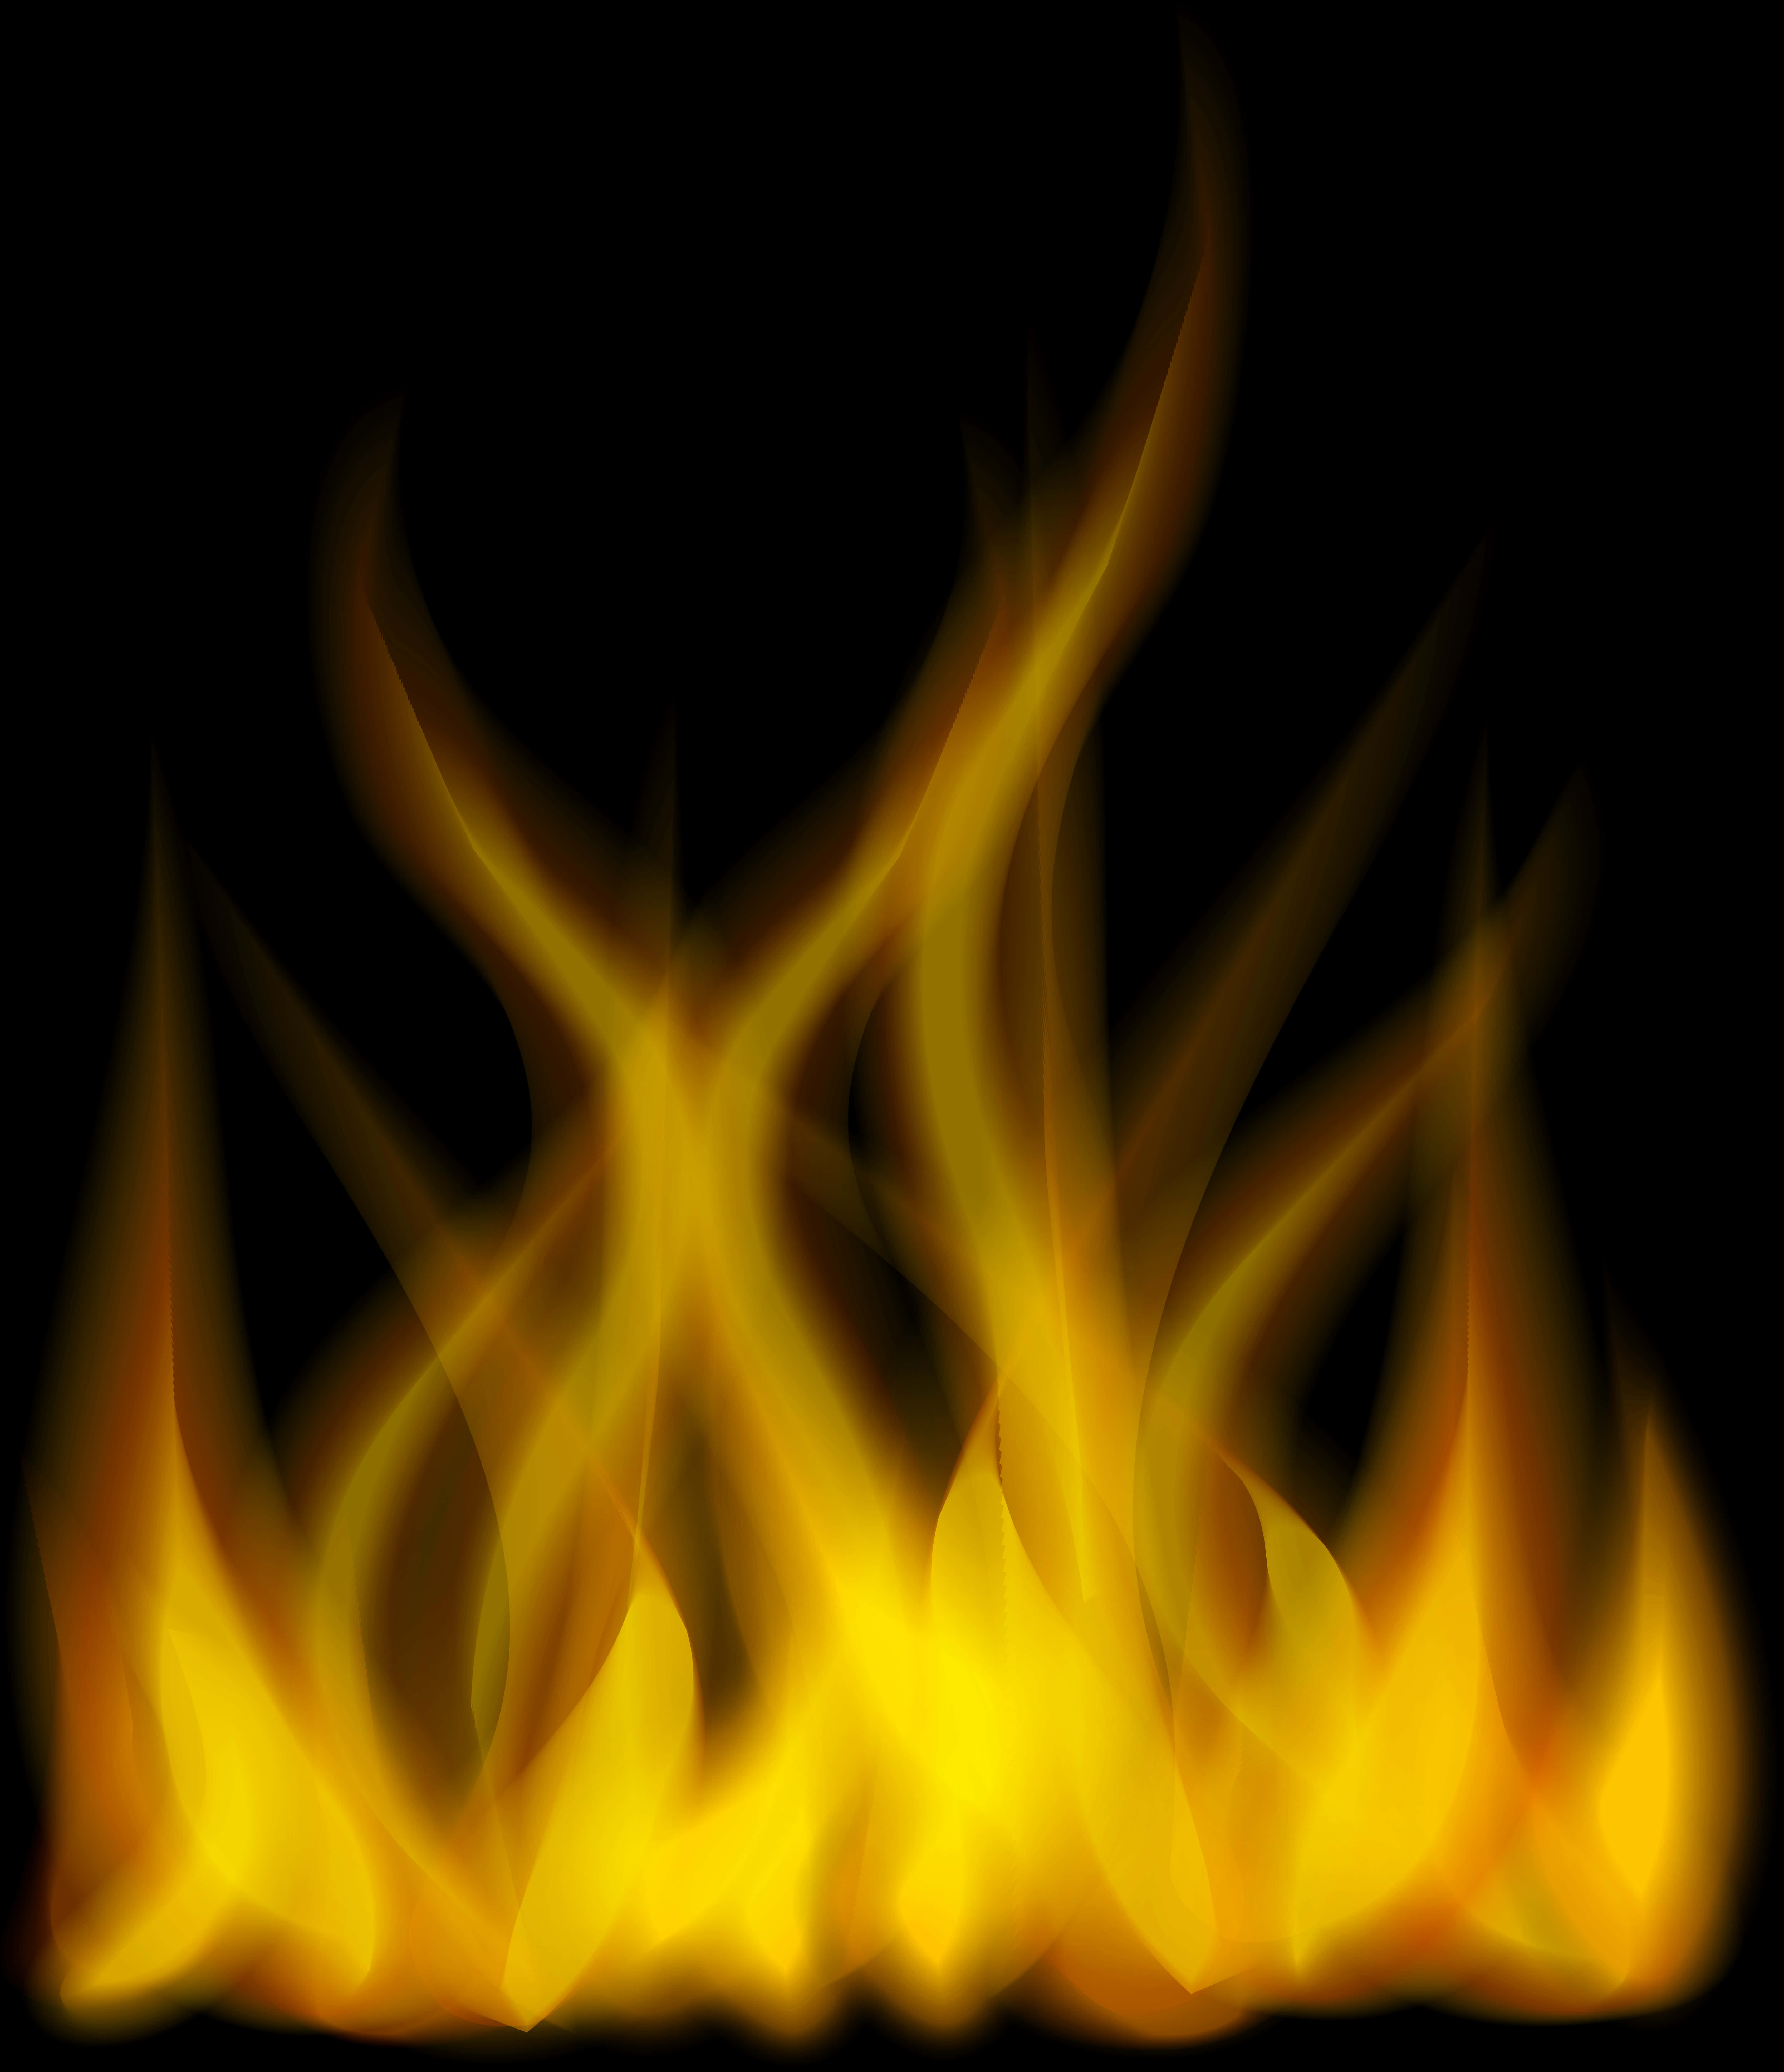 A Close Up Of A Fire